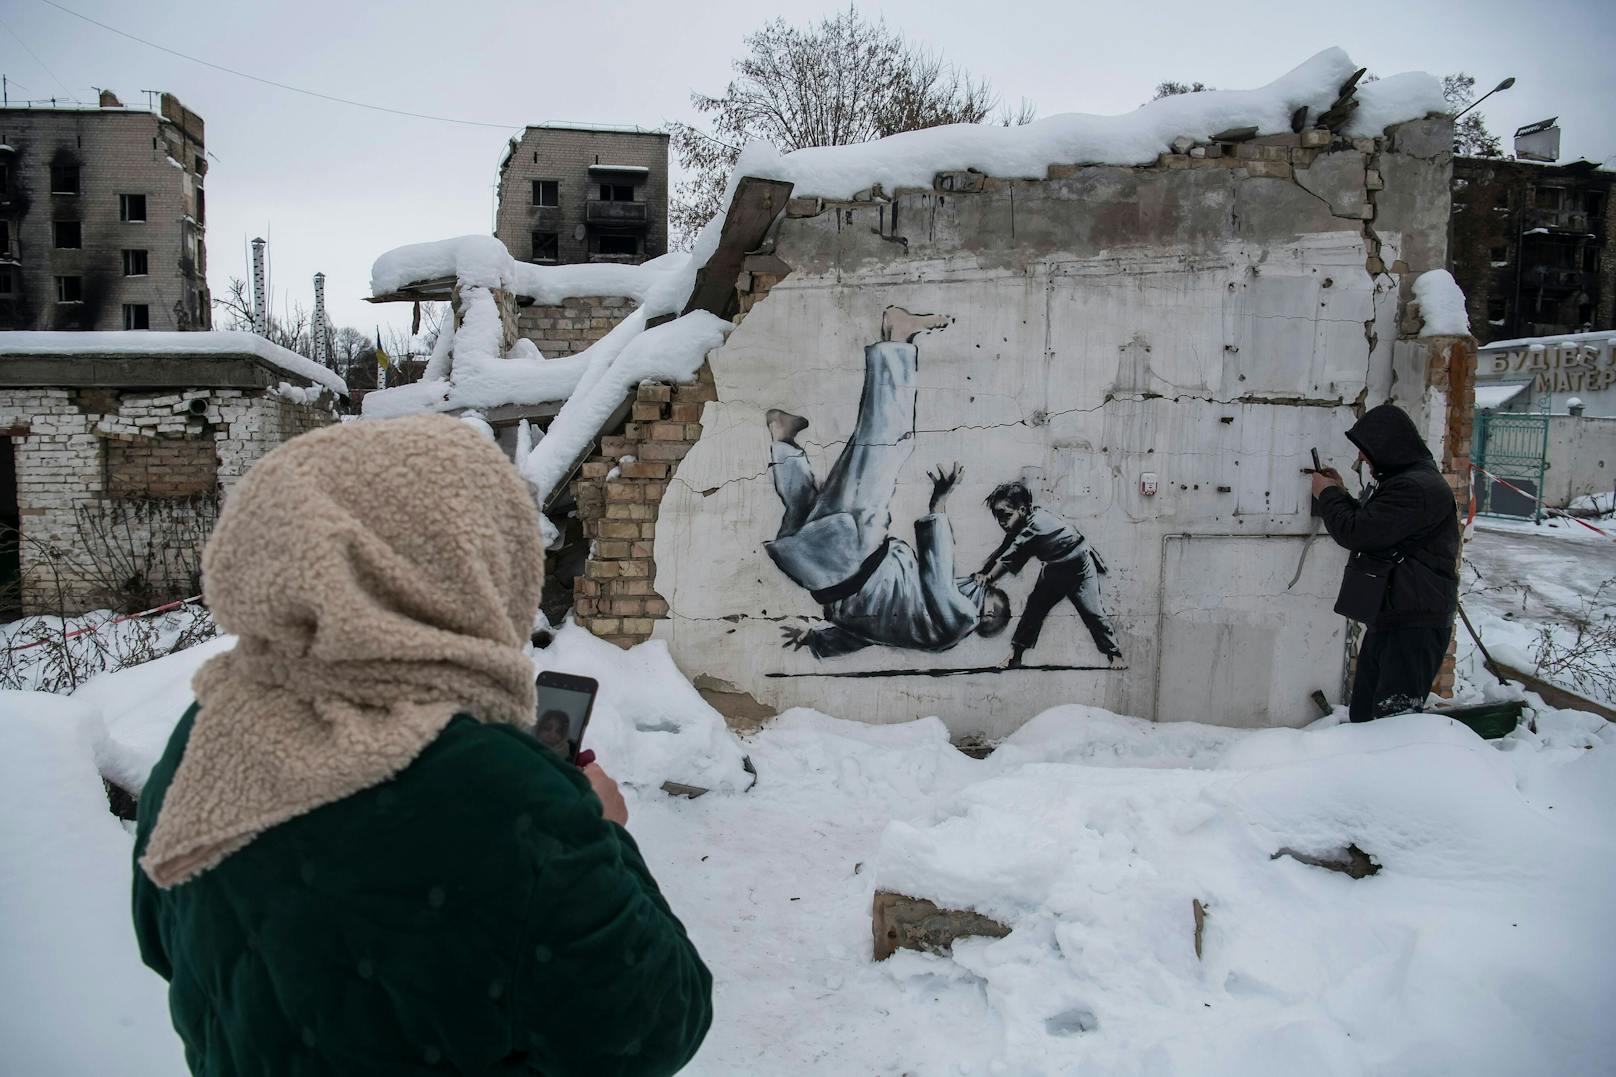 Banksy verkauft Kunst um 291.000 Euro für Ukraine-Hilfe